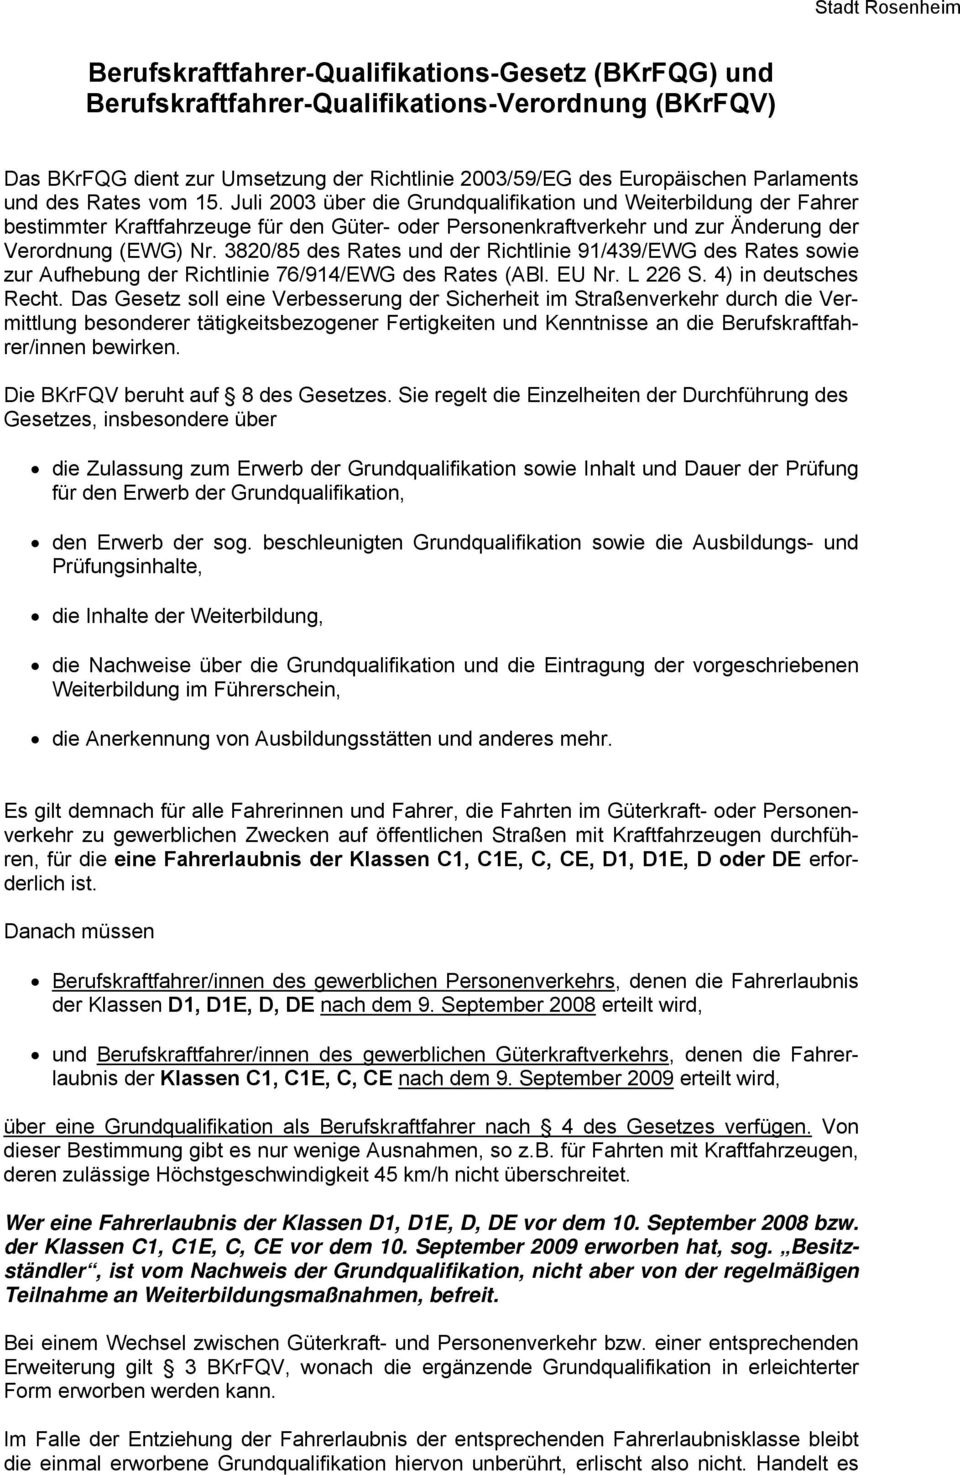 3820/85 des Rates und der Richtlinie 91/439/EWG des Rates sowie zur Aufhebung der Richtlinie 76/914/EWG des Rates (ABl. EU Nr. L 226 S. 4) in deutsches Recht.